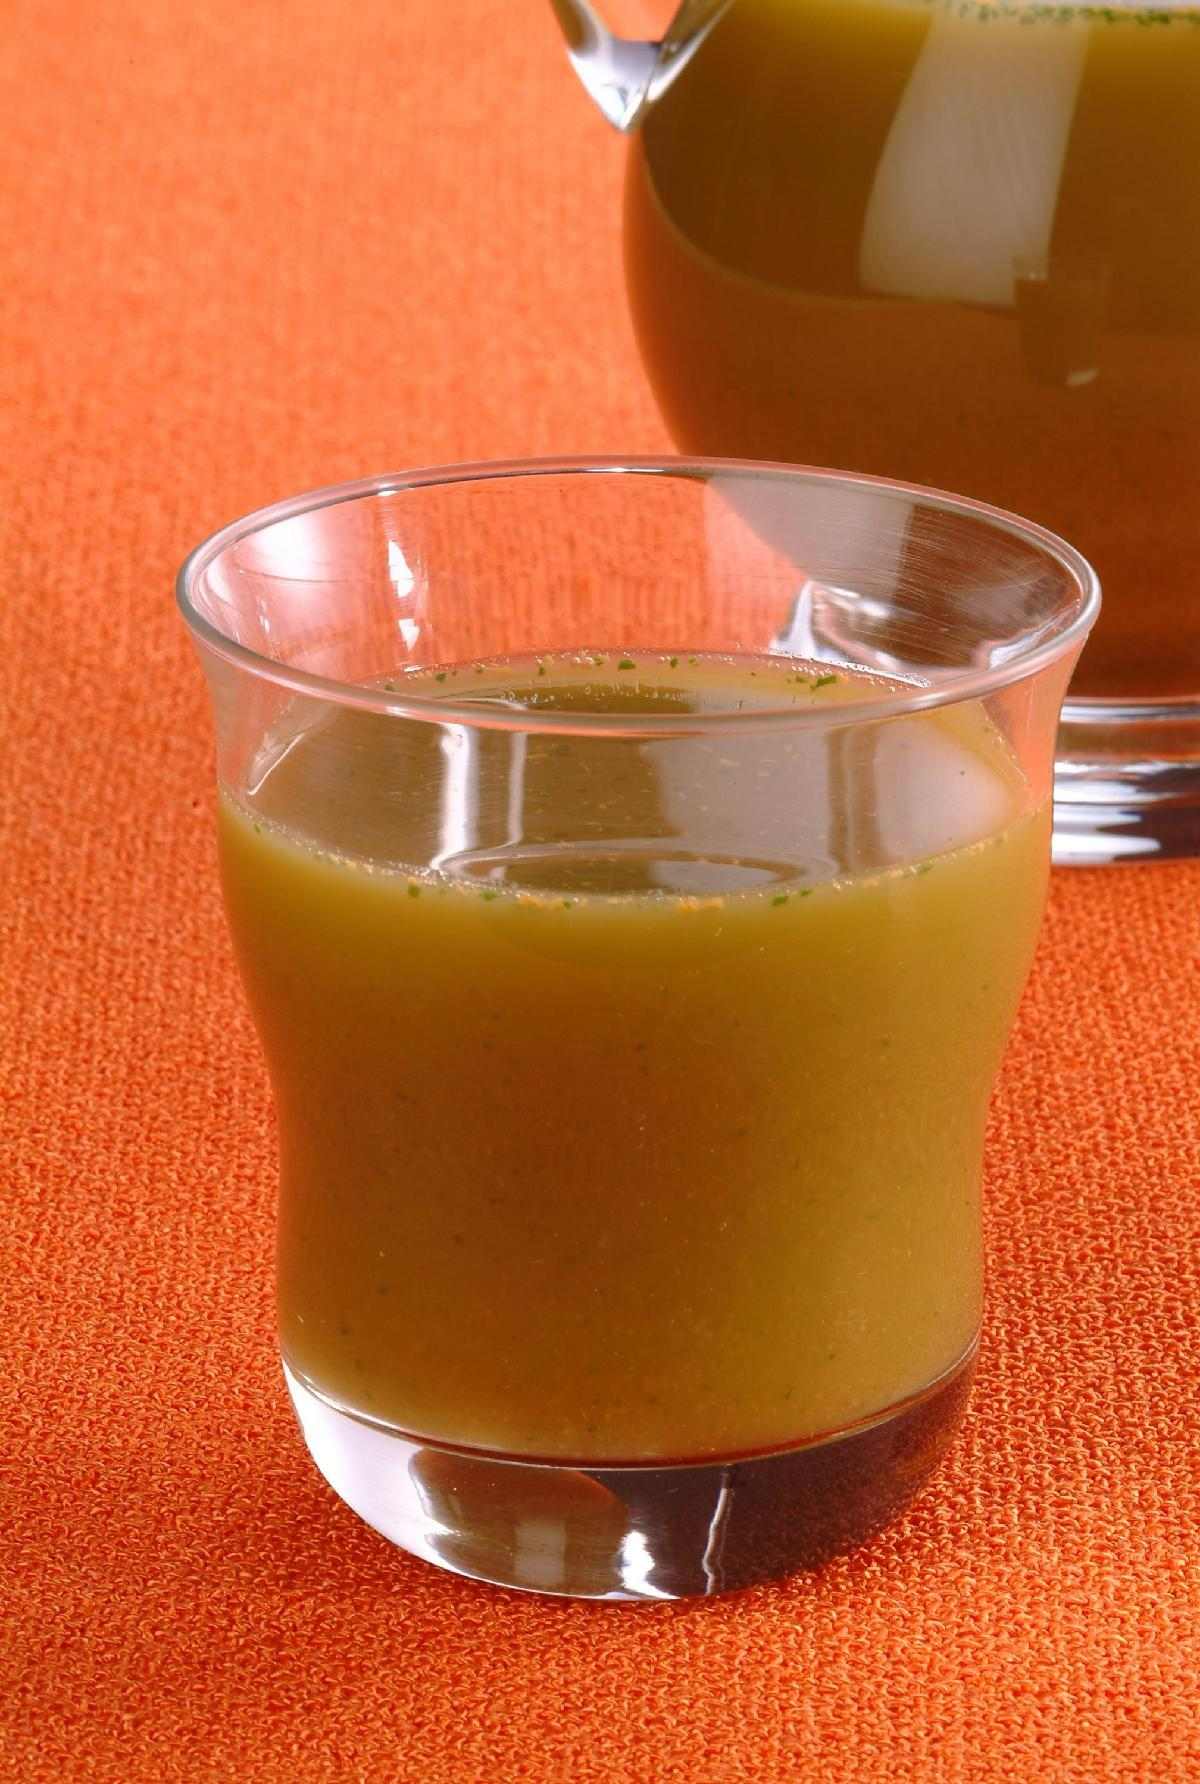 Tempo: 40min (+4h20 de congelador) Ingredientes: Suco de 2 laranjas (Vitamina C para melhorar o sabor e aproveitar melhor o Ferro) 1/2 cenoura sem casca